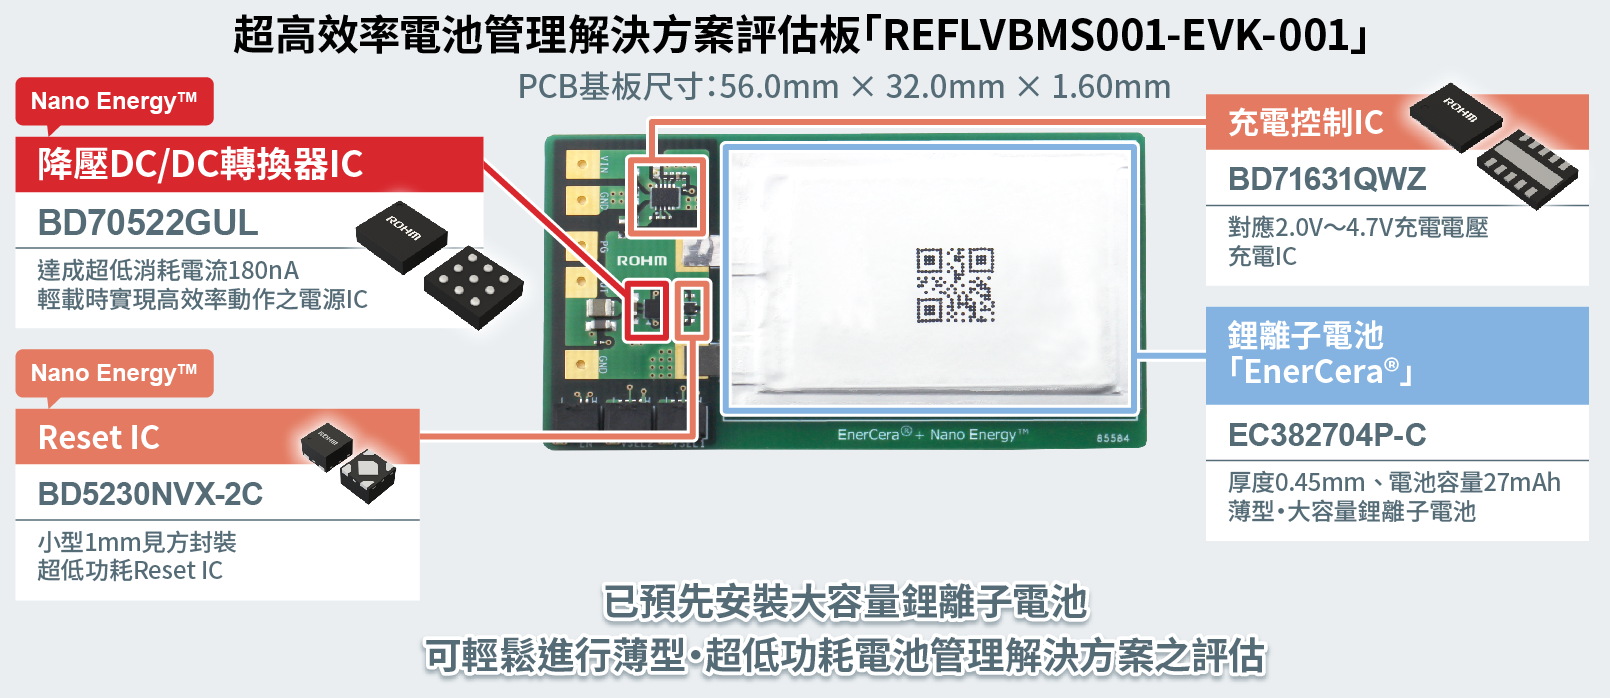 超高效電池管理解決方案的評估板REFLVBMS001-EVK-001